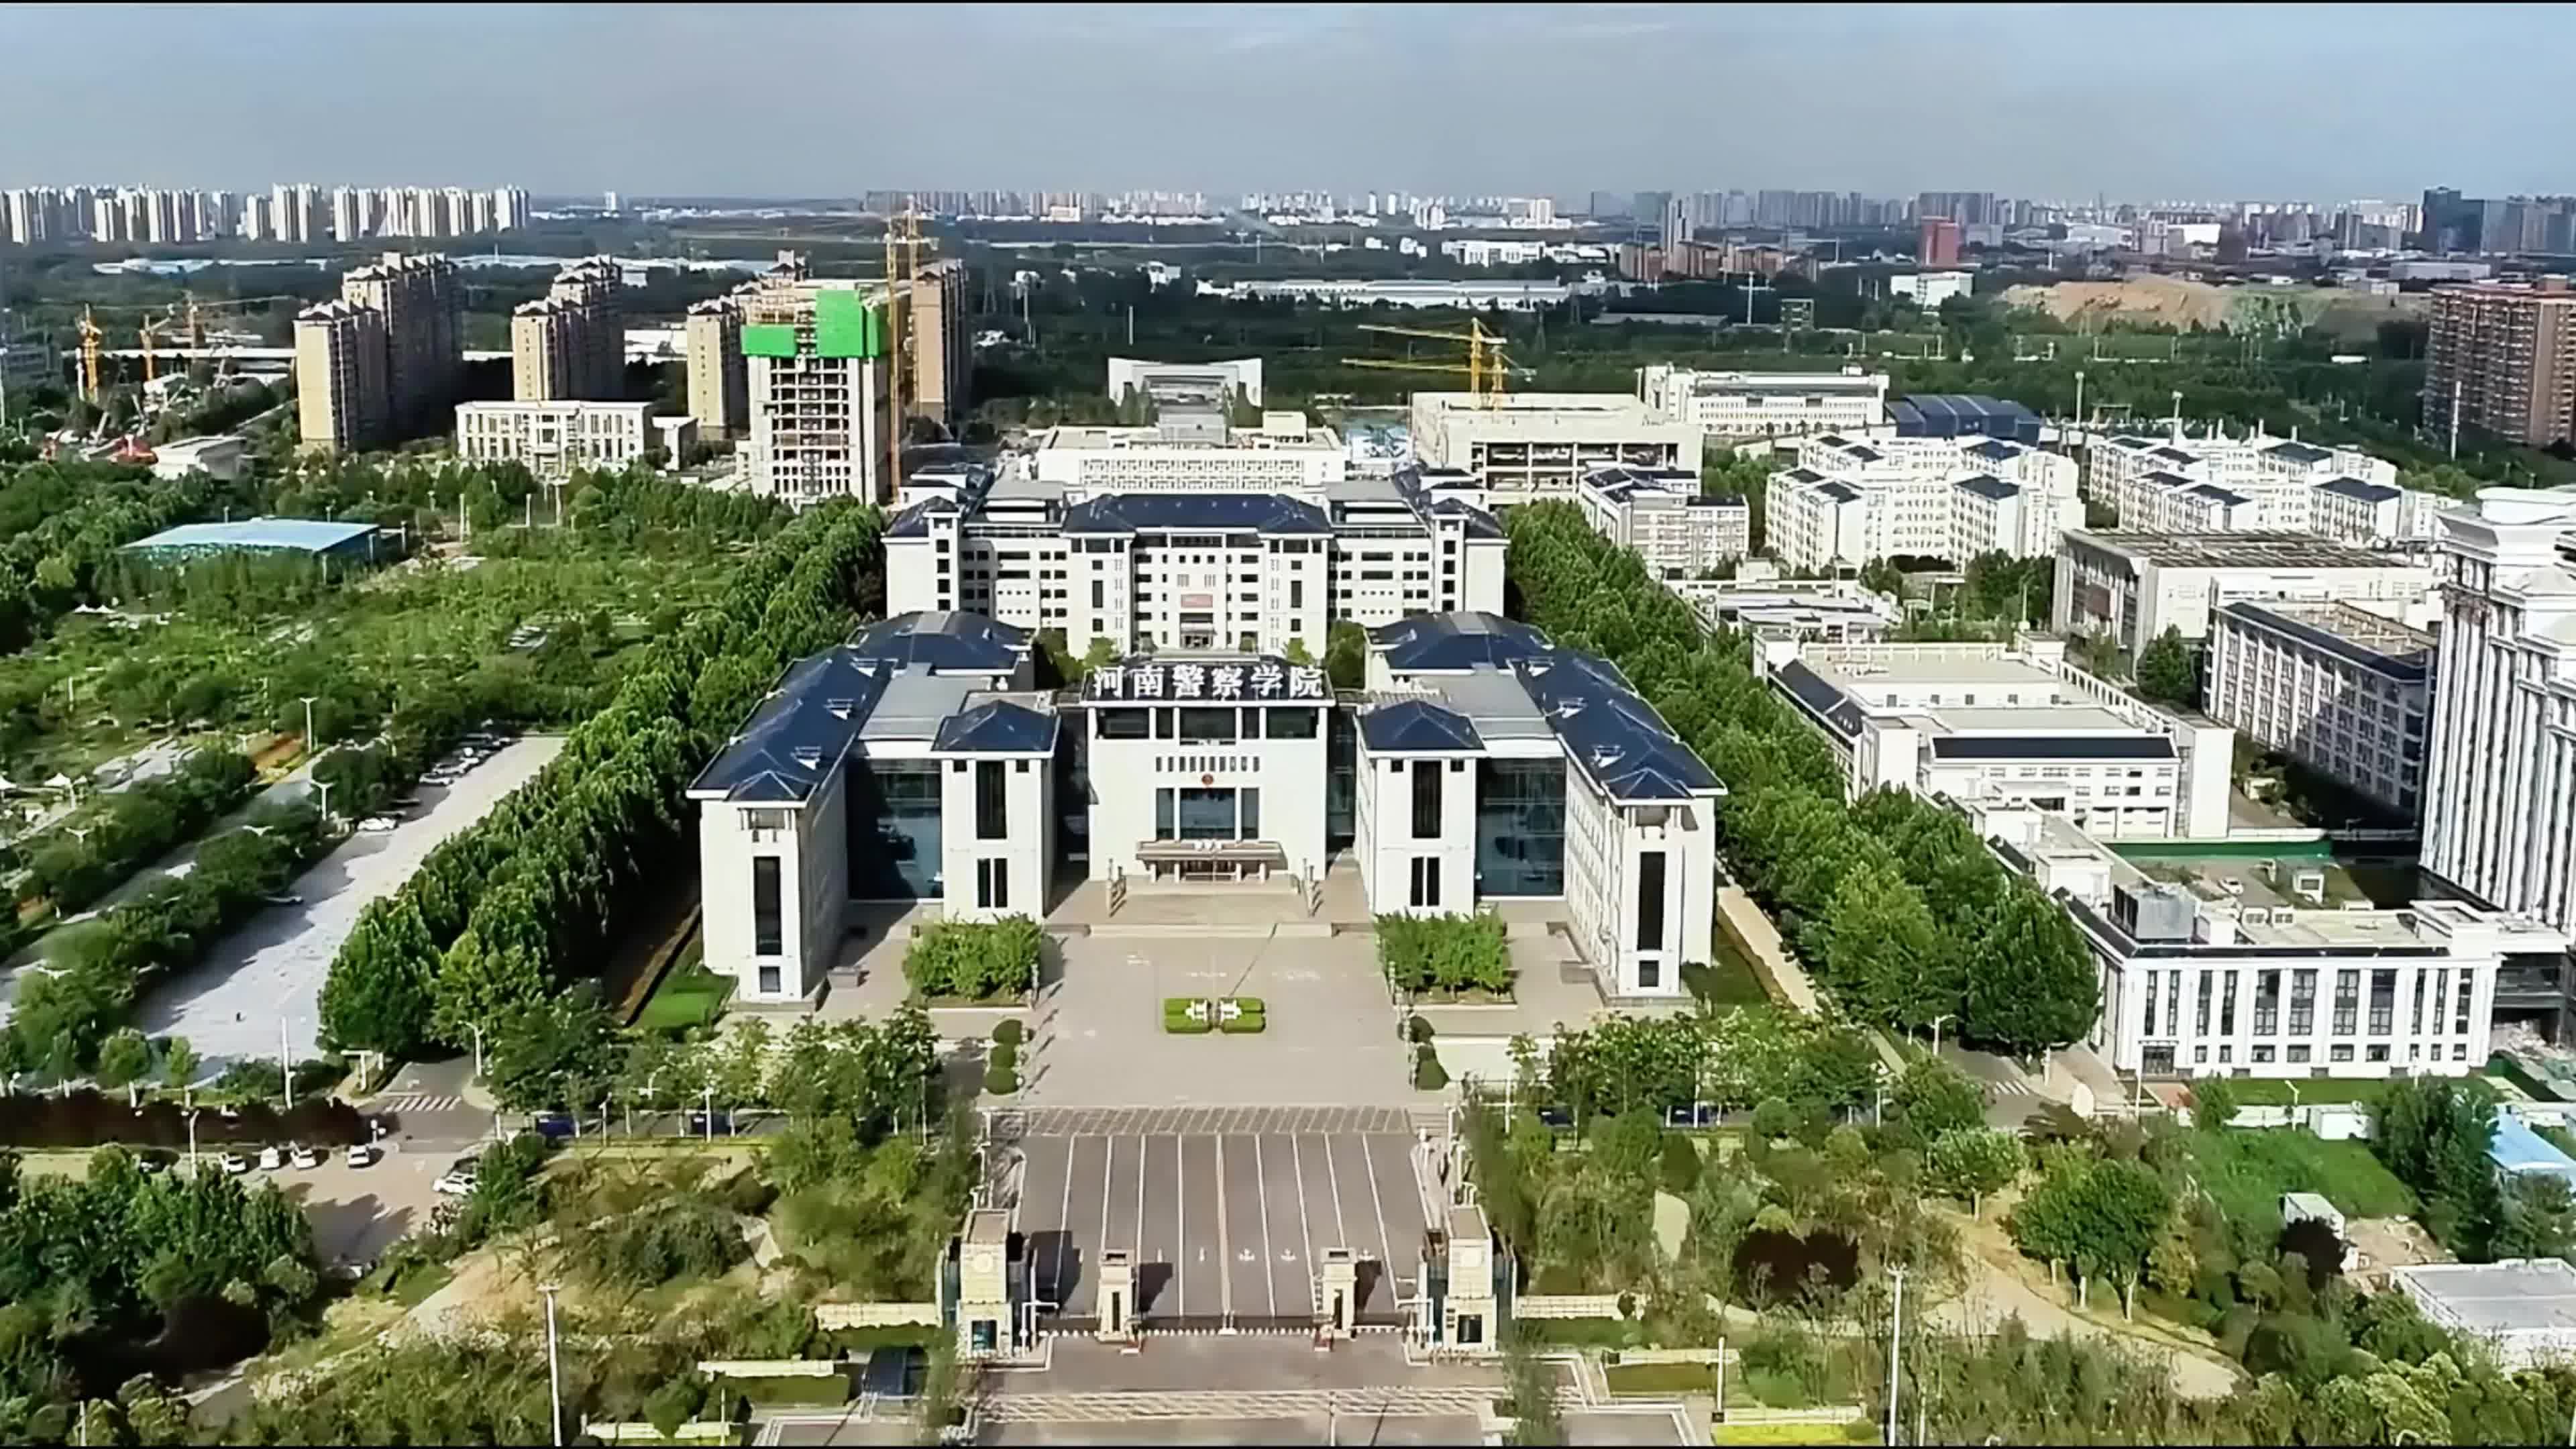 北京警察学院平面图图片